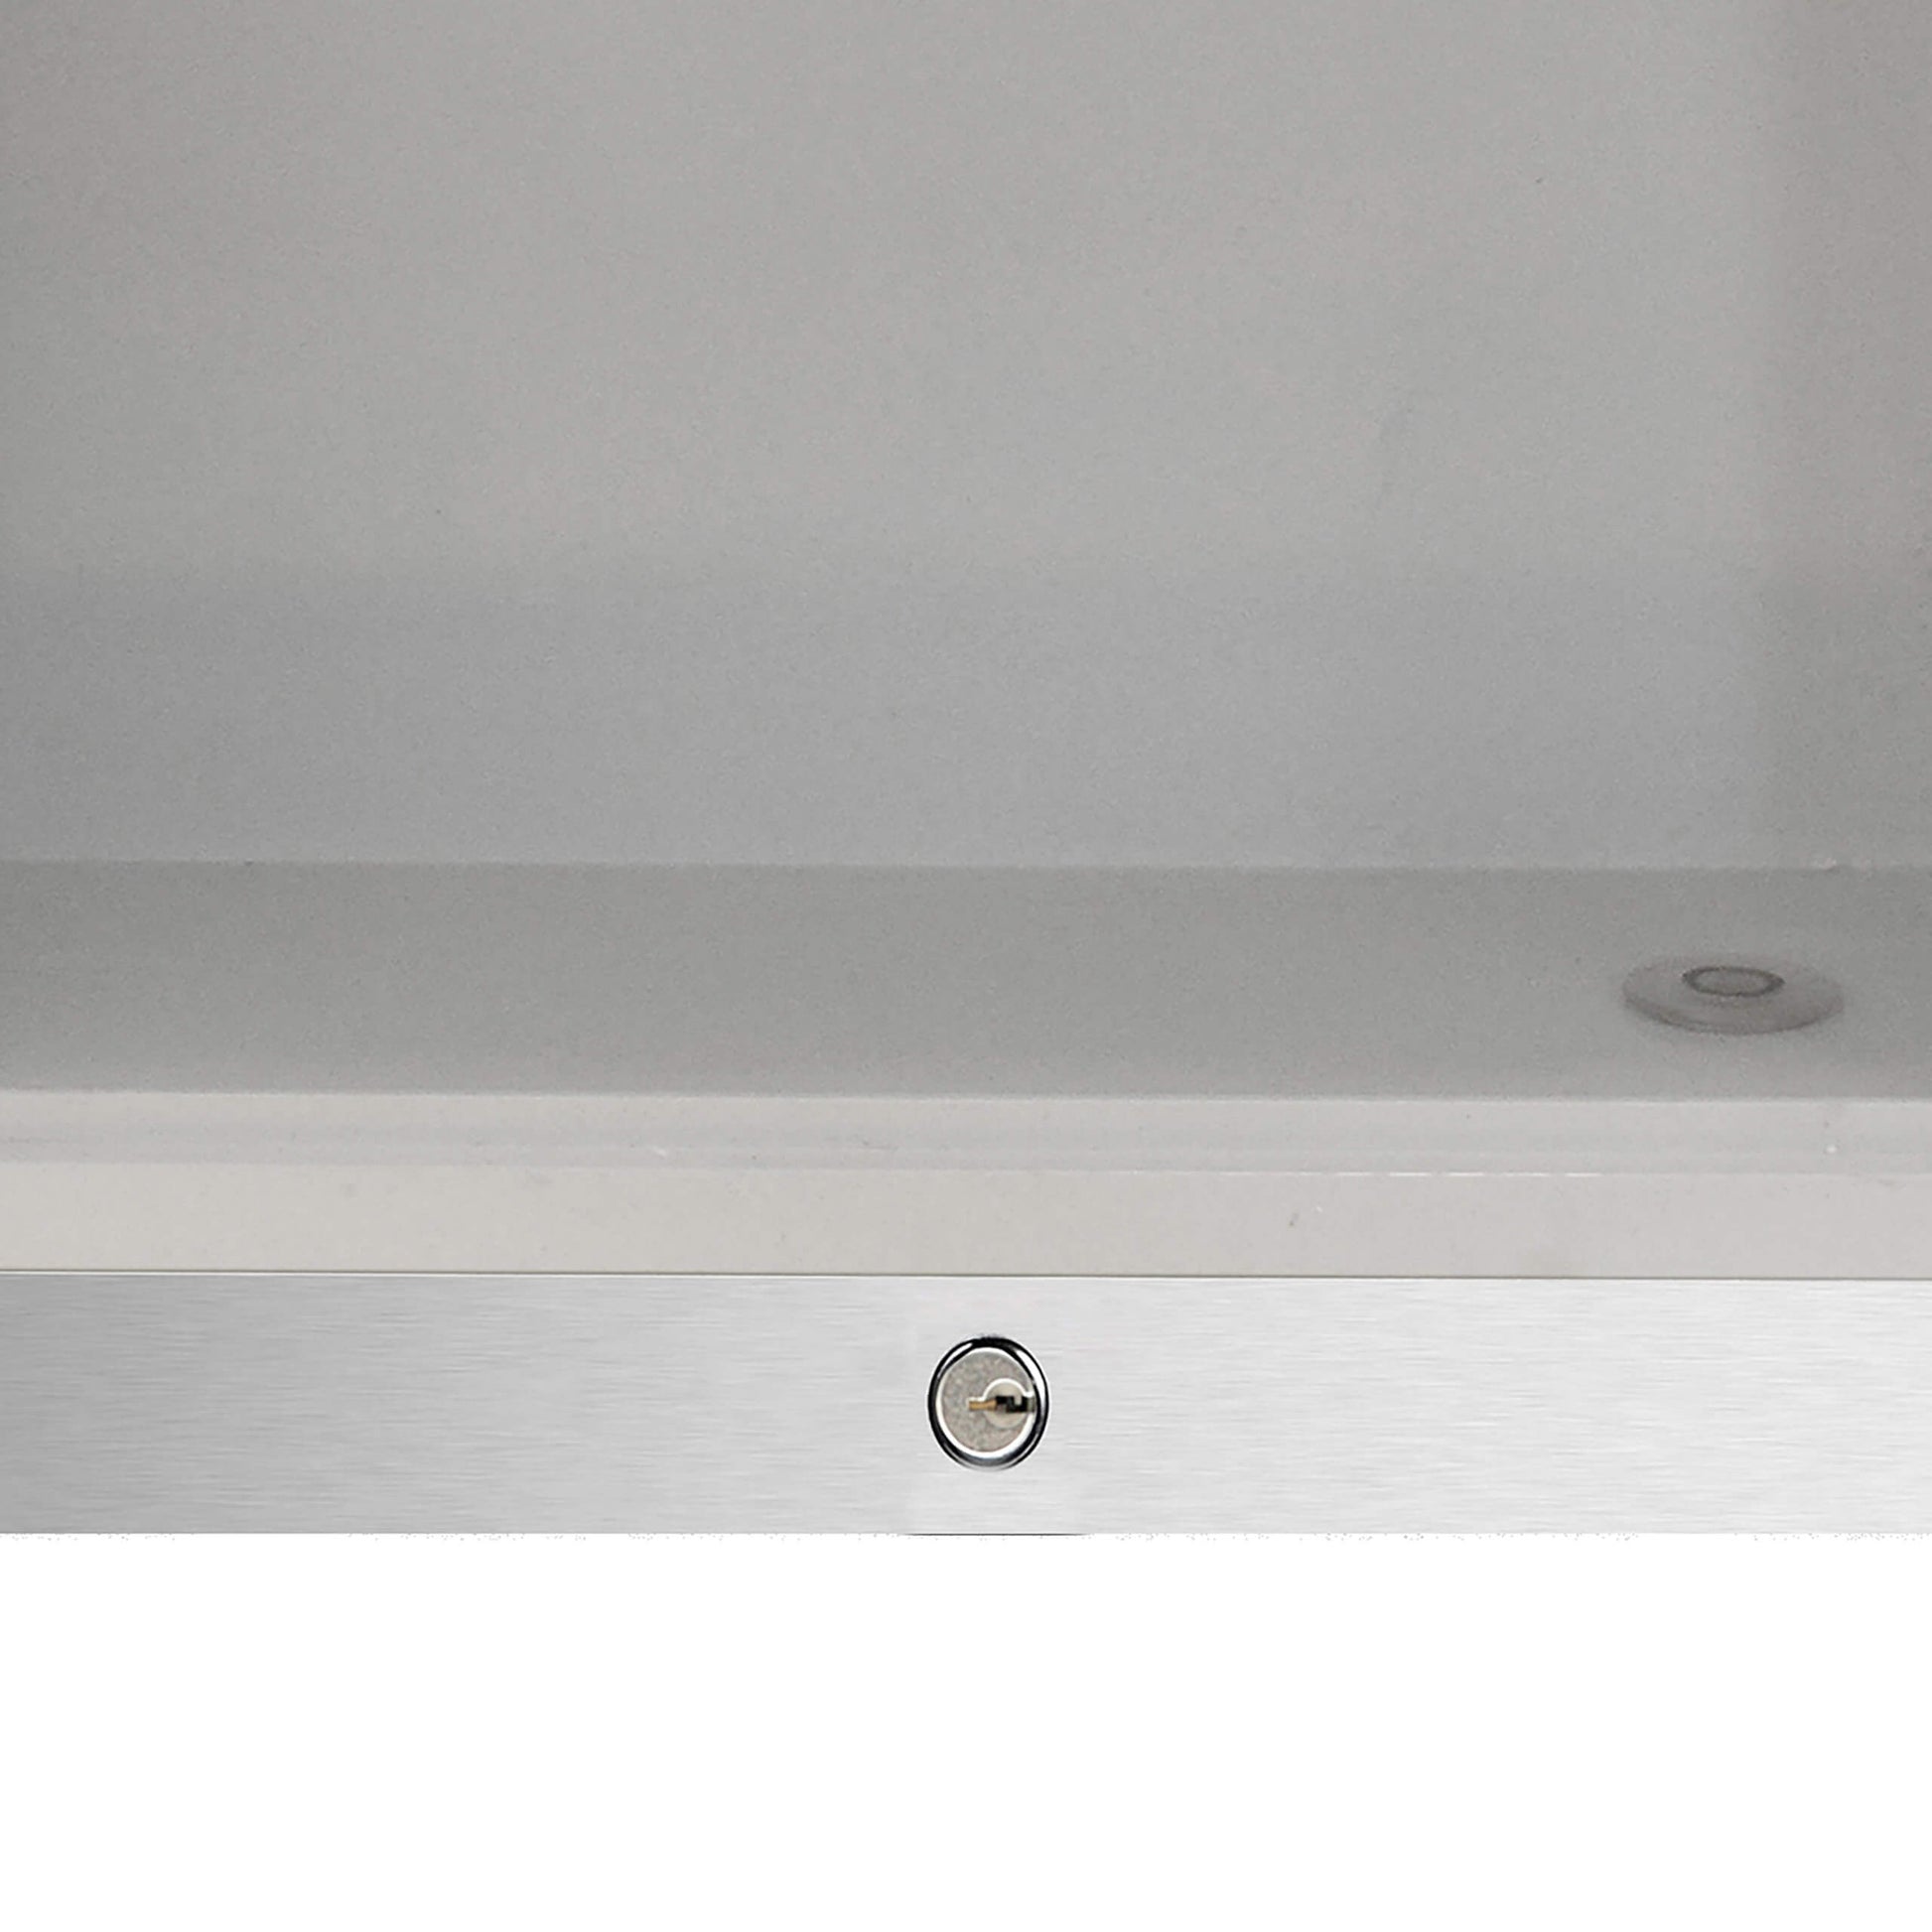 Whynter Compact Freezer / Refrigerators Whynter CDF-177SB Countertop Reach-In 1.8 cu ft Display Glass Door Freezer